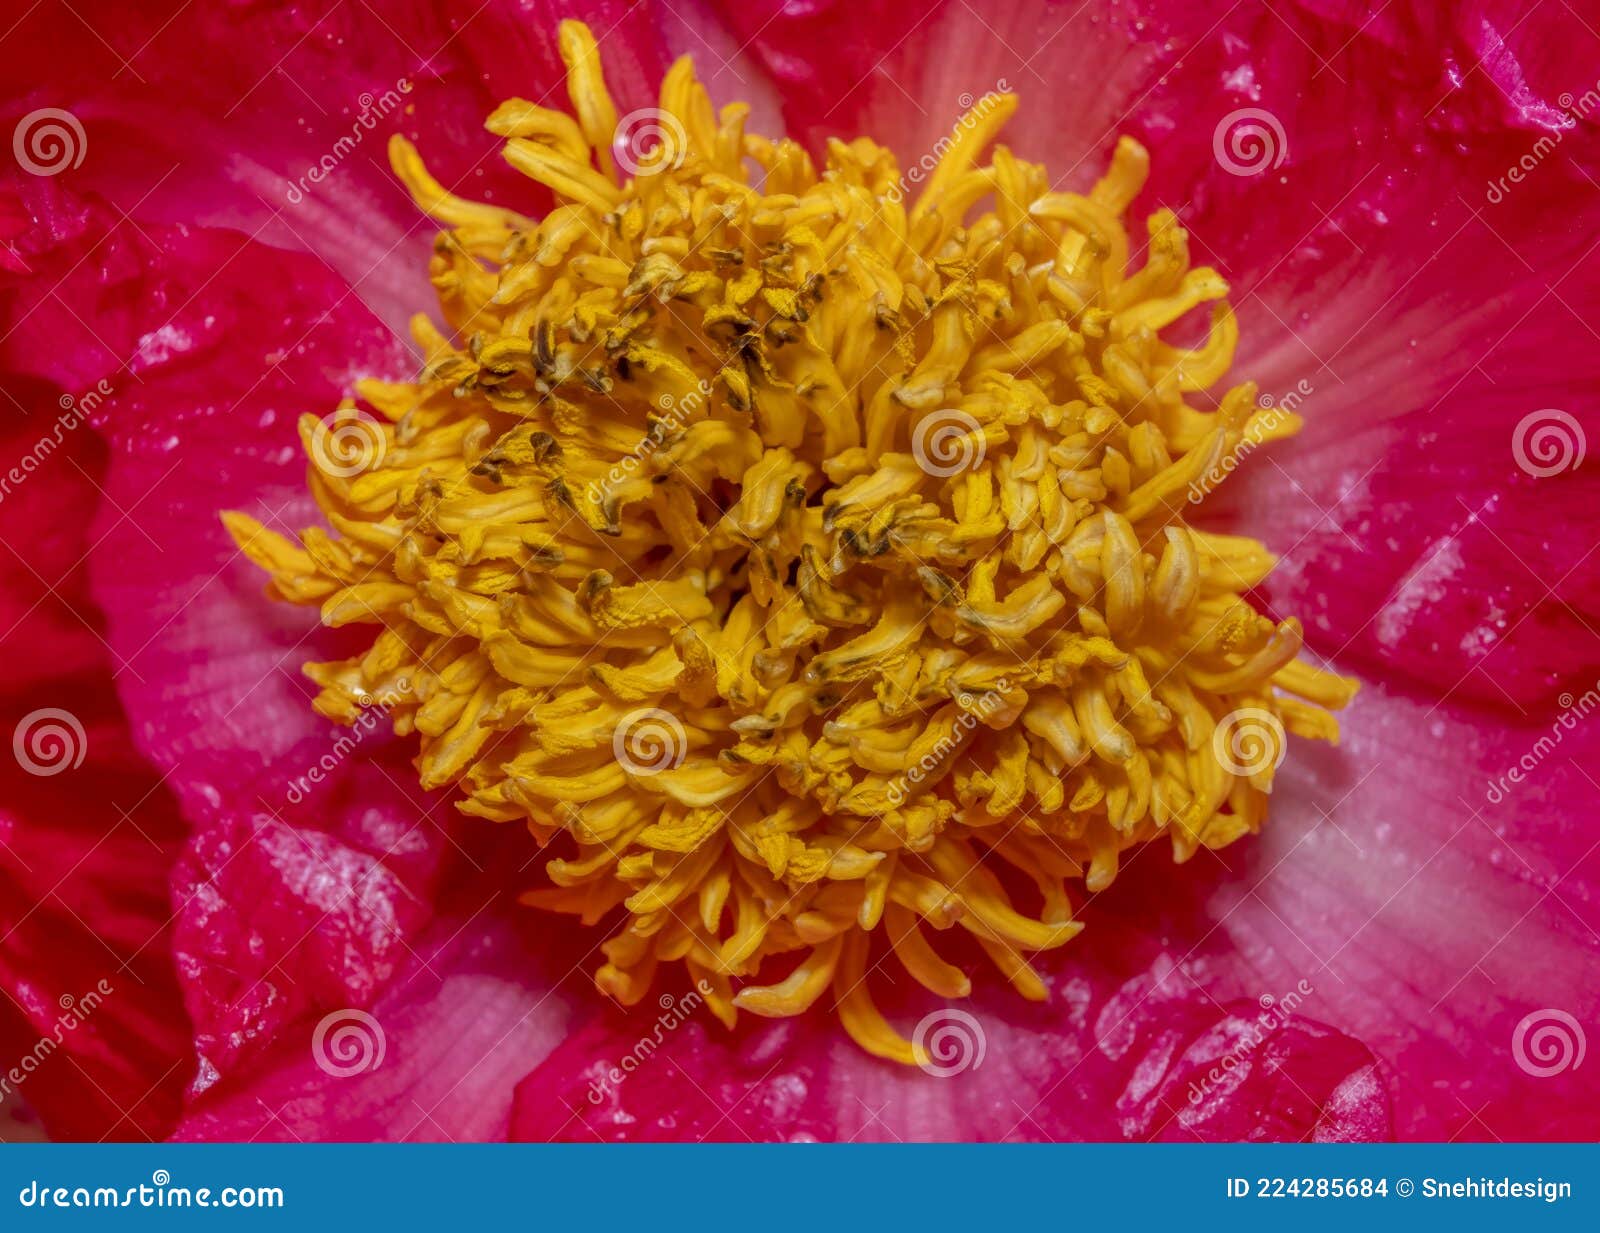 anther flower inside details close up shot